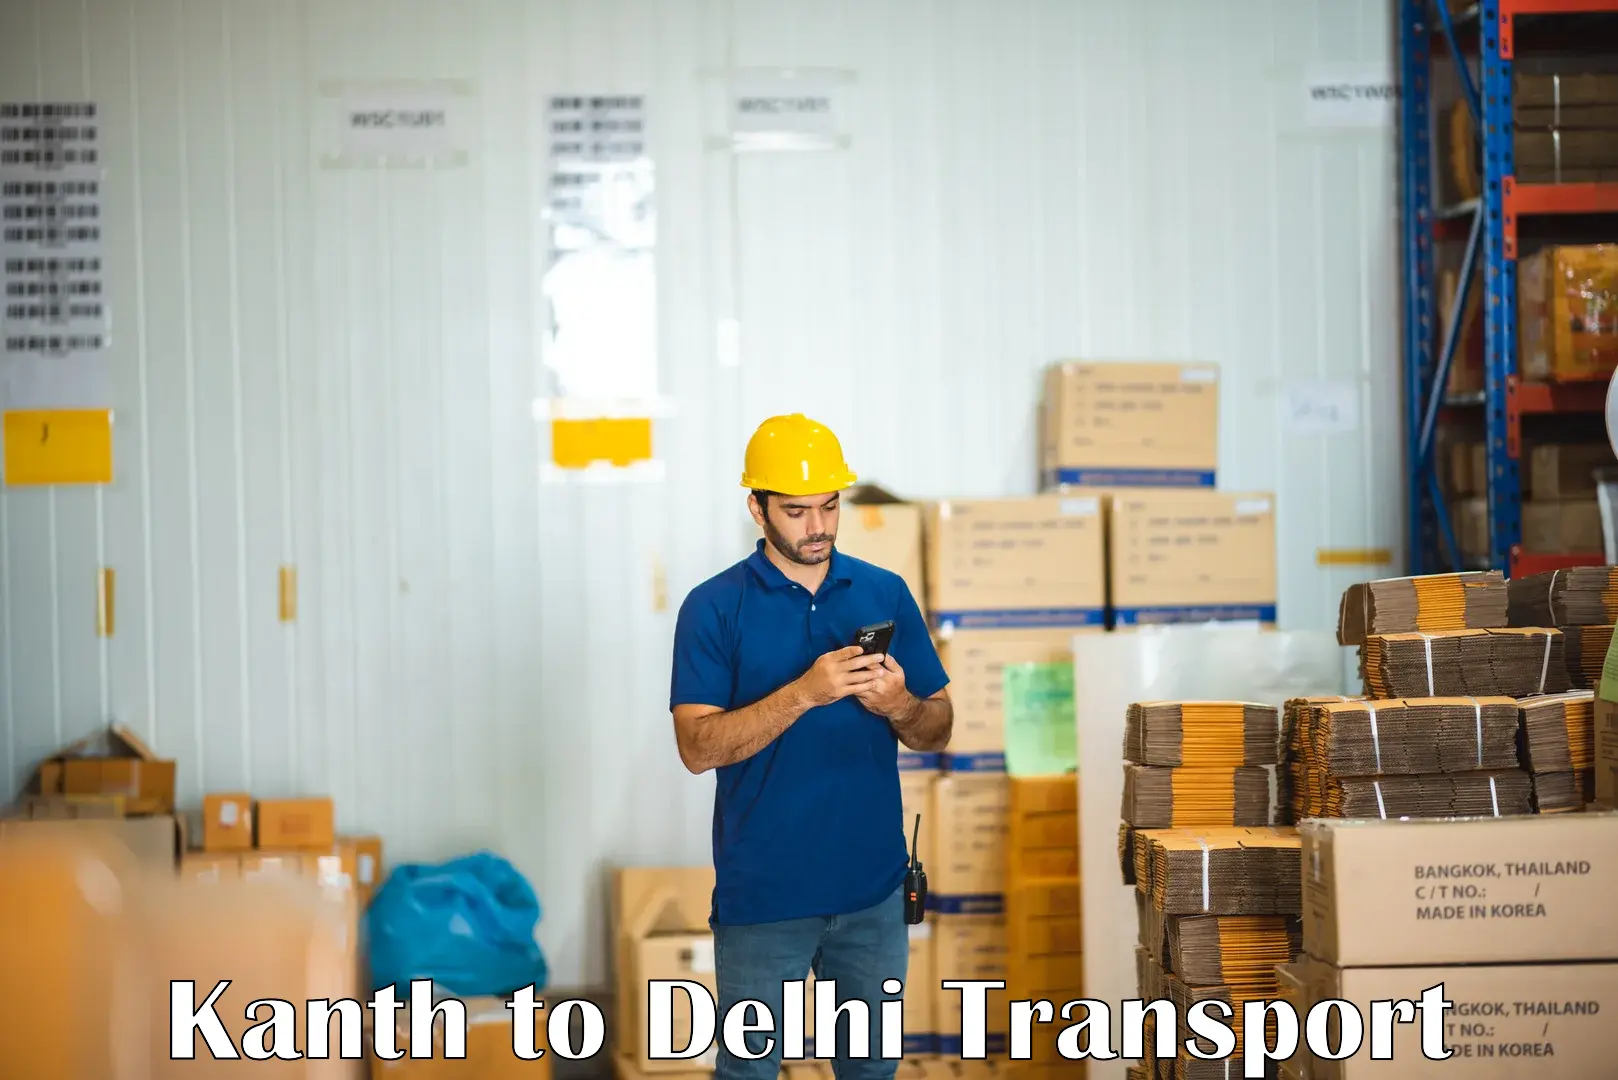 Interstate transport services Kanth to IIT Delhi